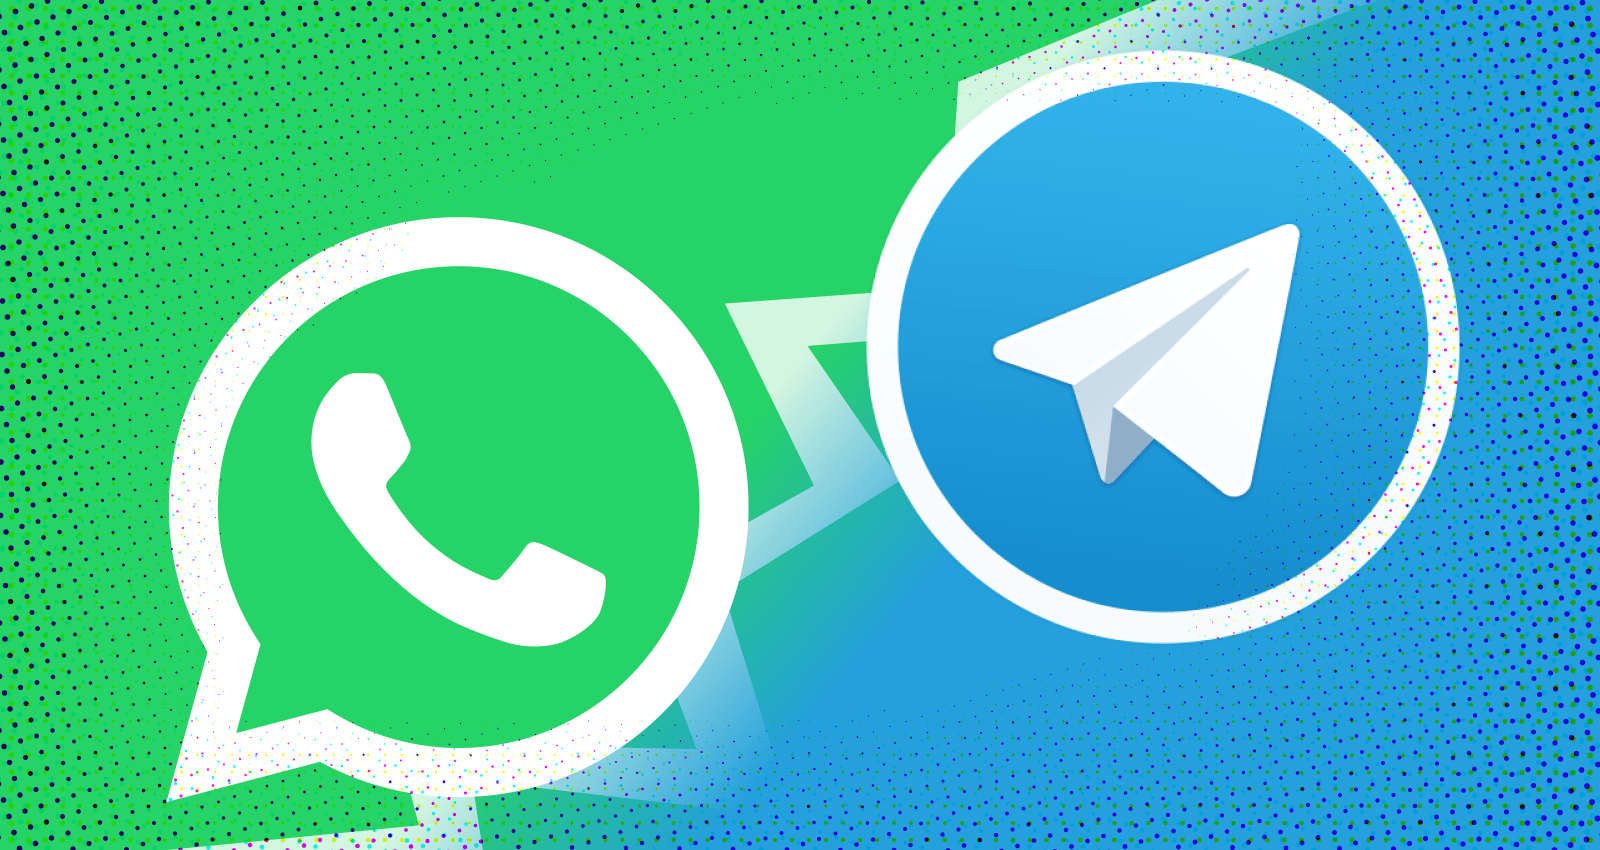 آموزش انتقال چت ها از WhatsApp به Telegram